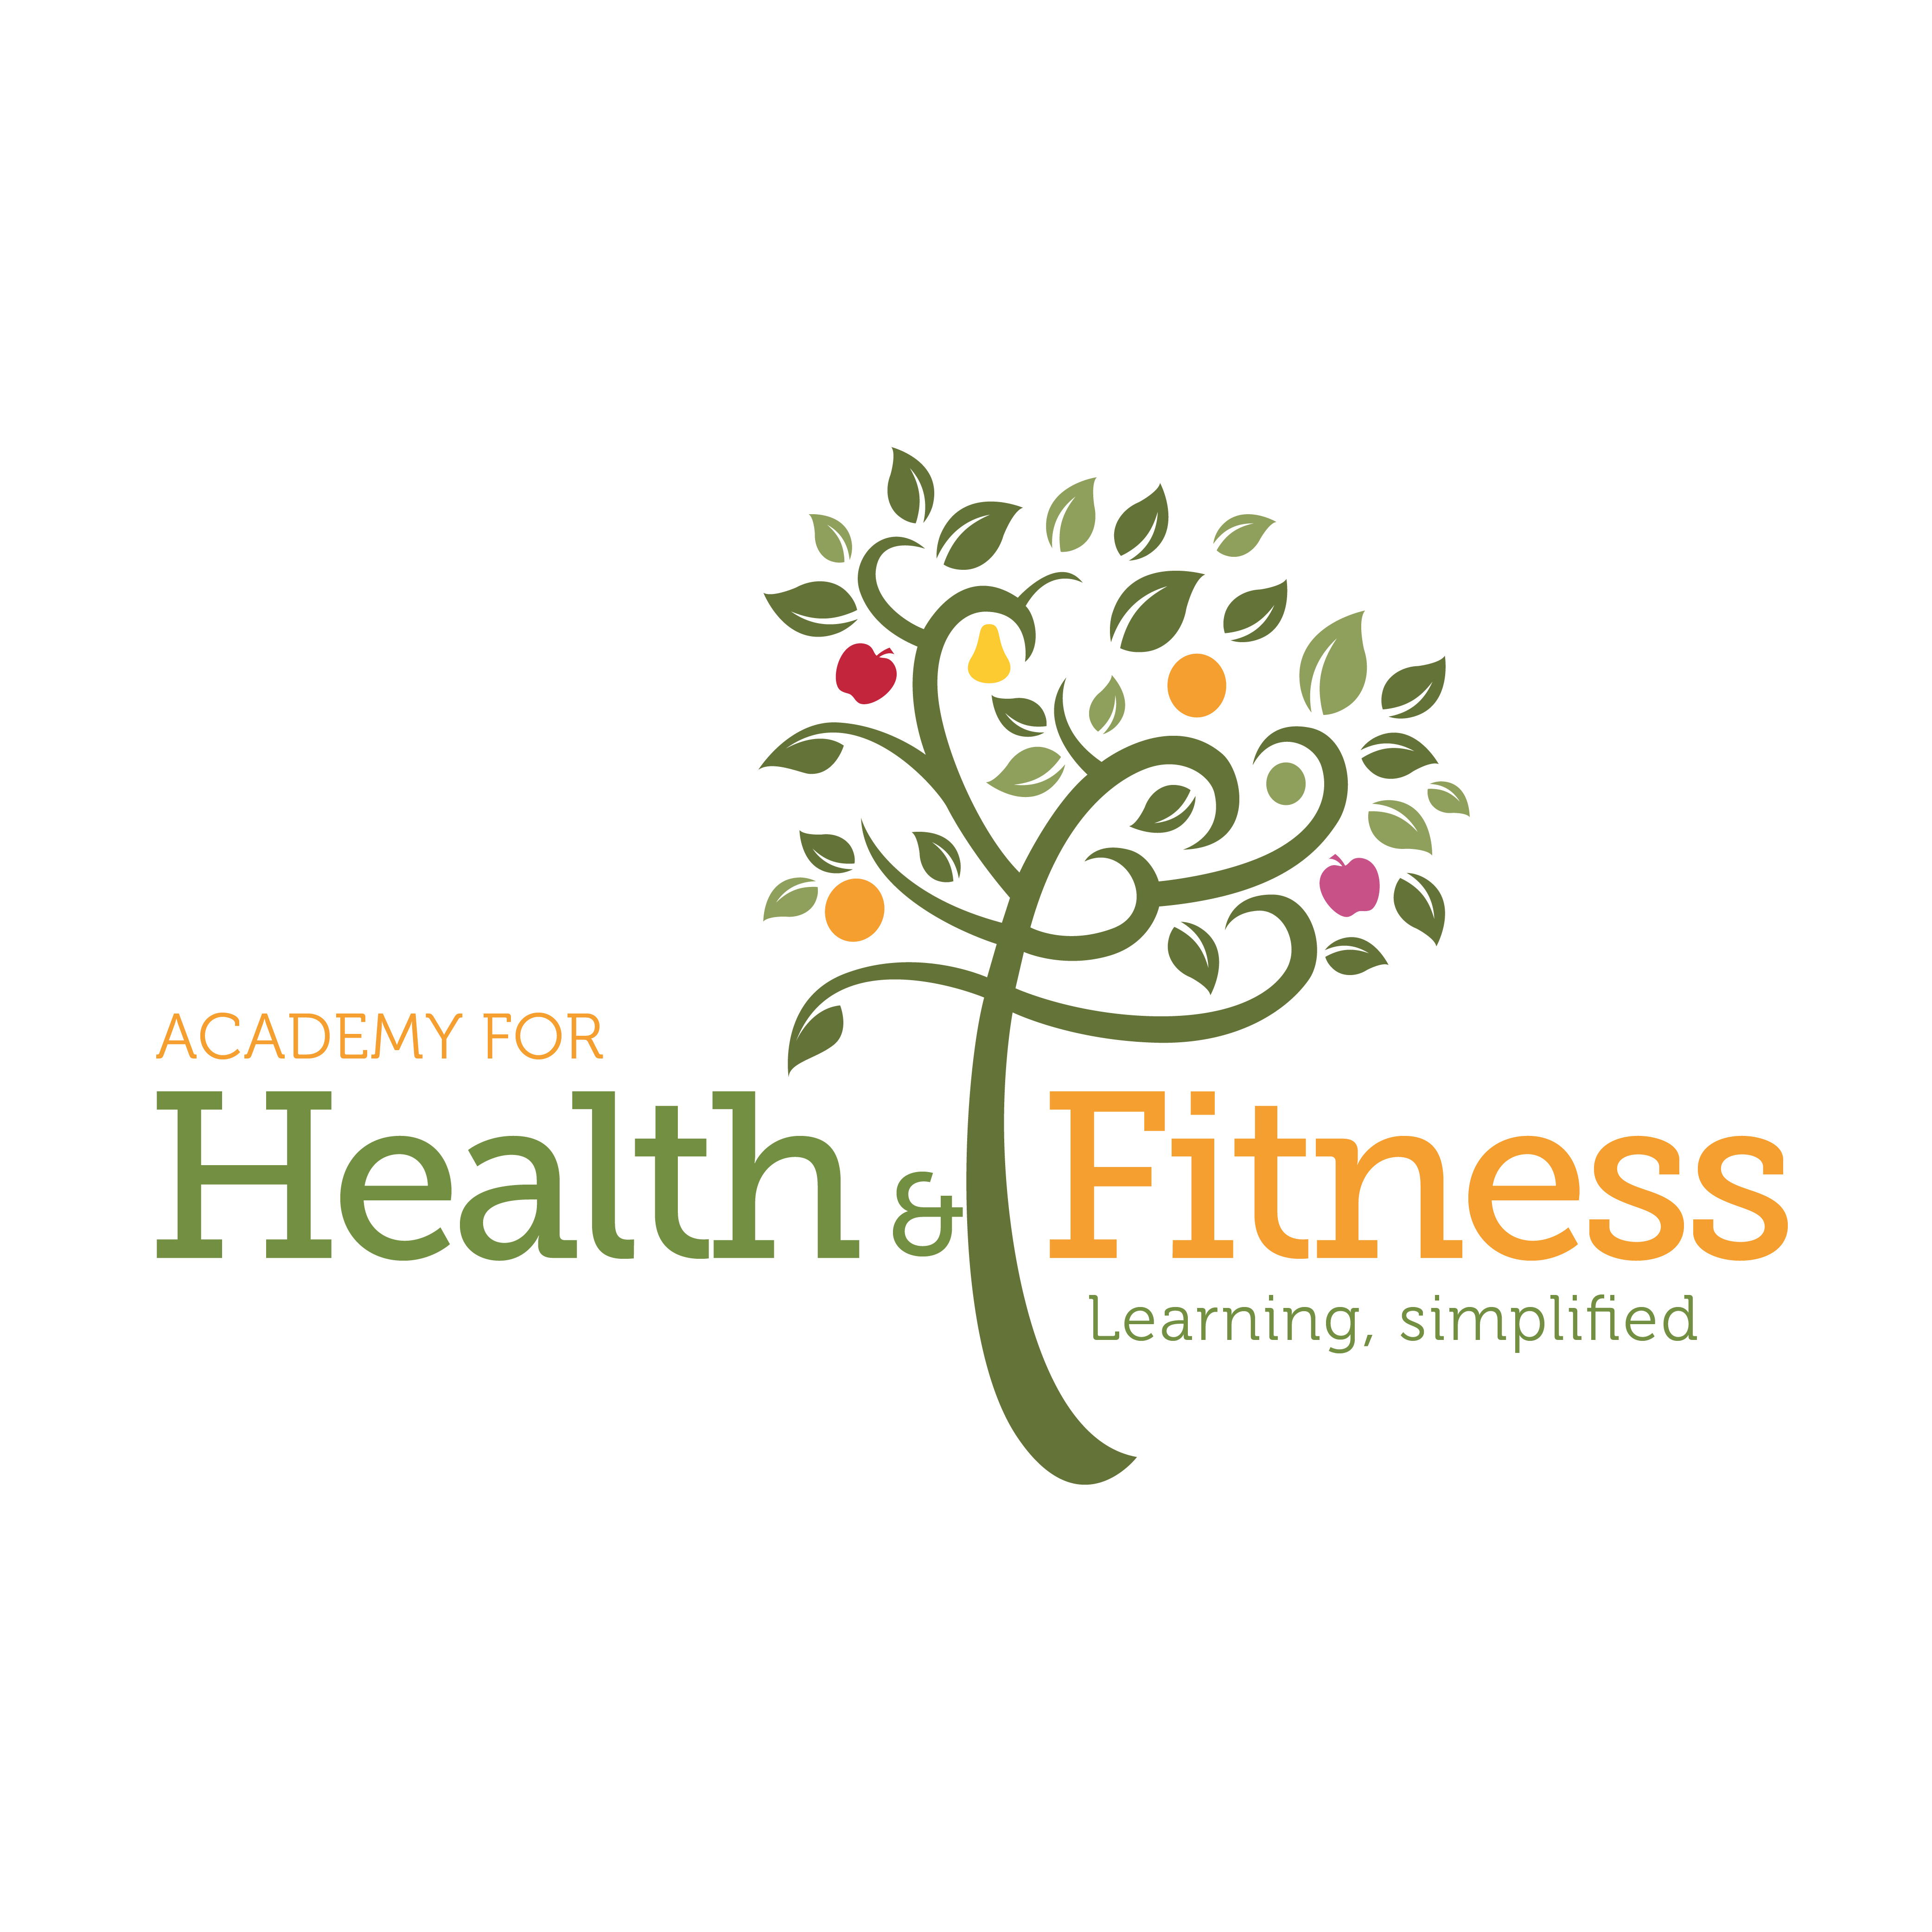 المزيد عن Academy for Health & Fitness